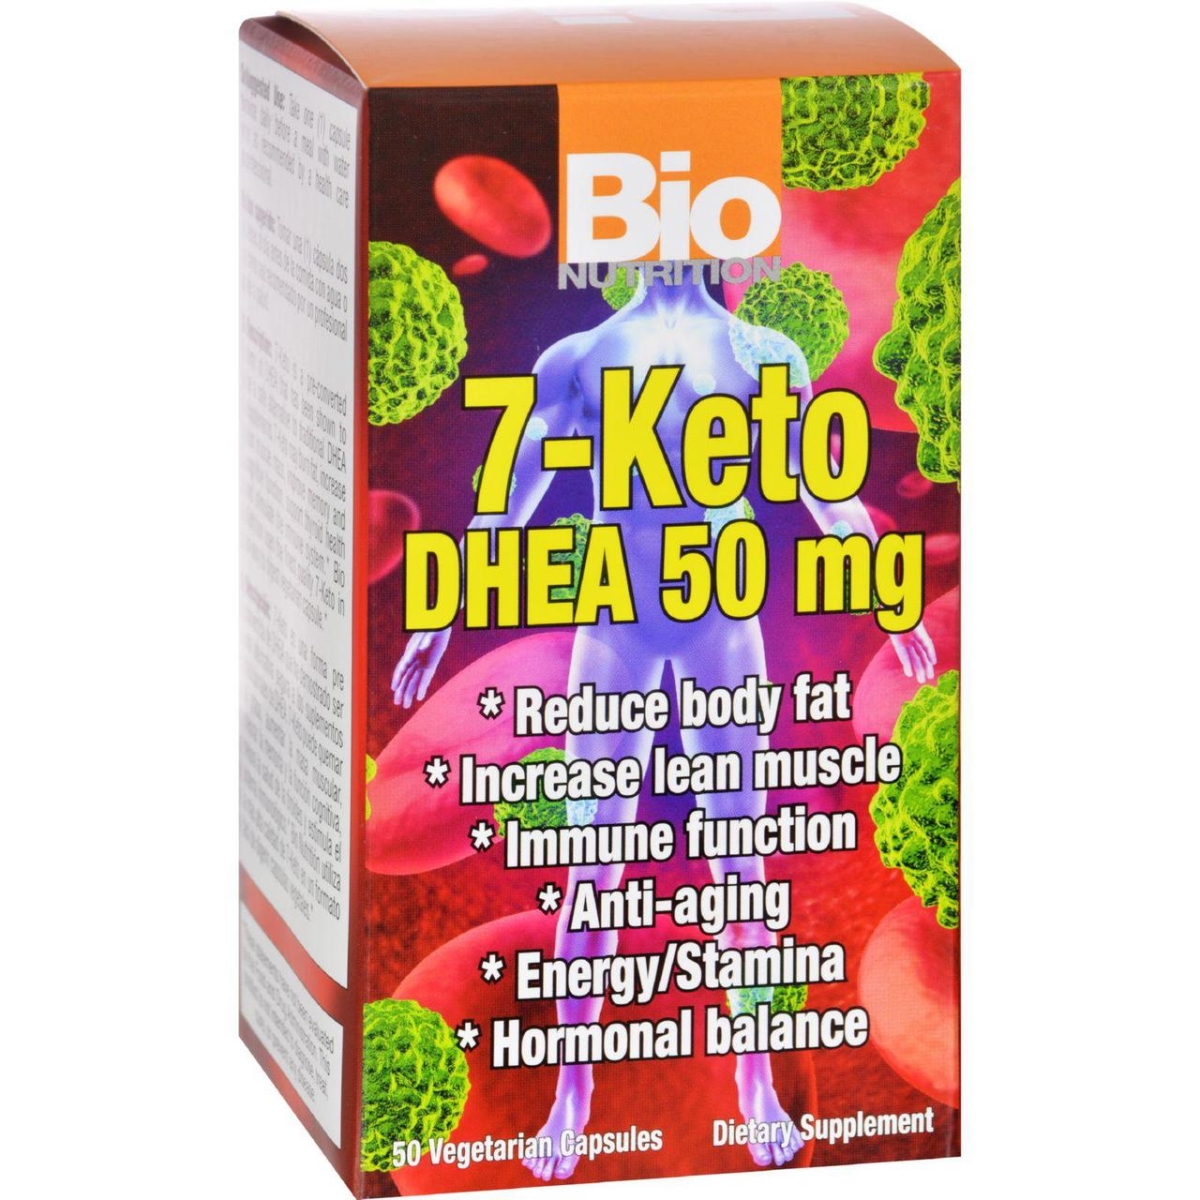 Bio Nutrition Hg1124502 50 Mg 7 Keto Dhea - 50 Vegetarian Capsules